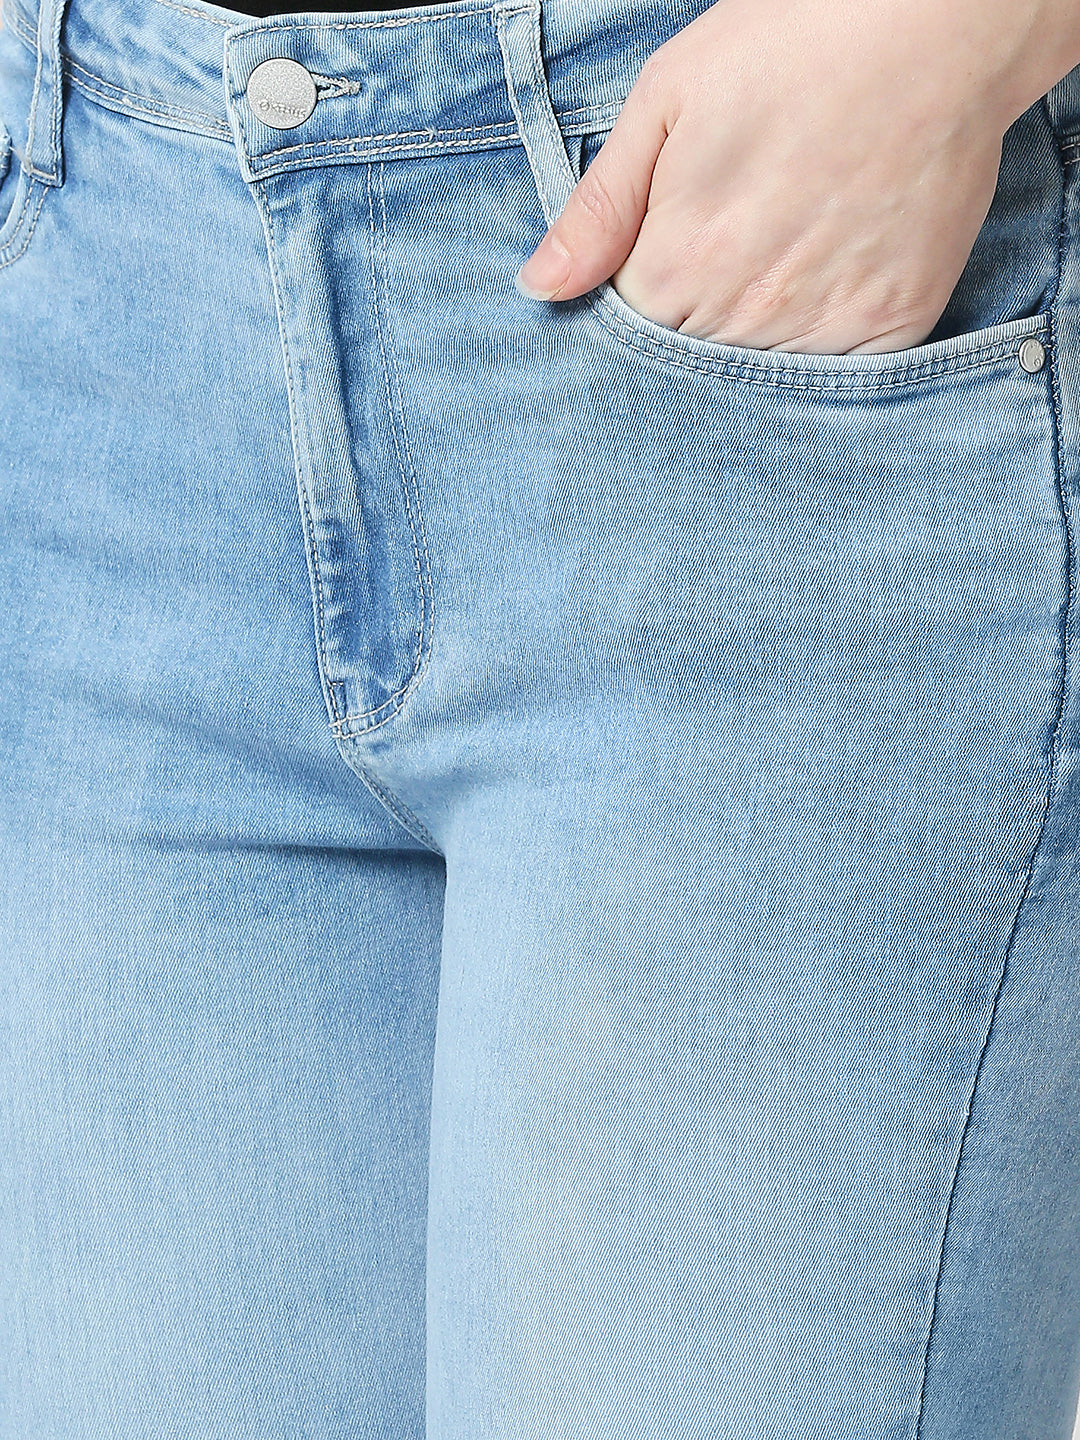 K4014 High-Rise Skinny Jeans - Light Blue